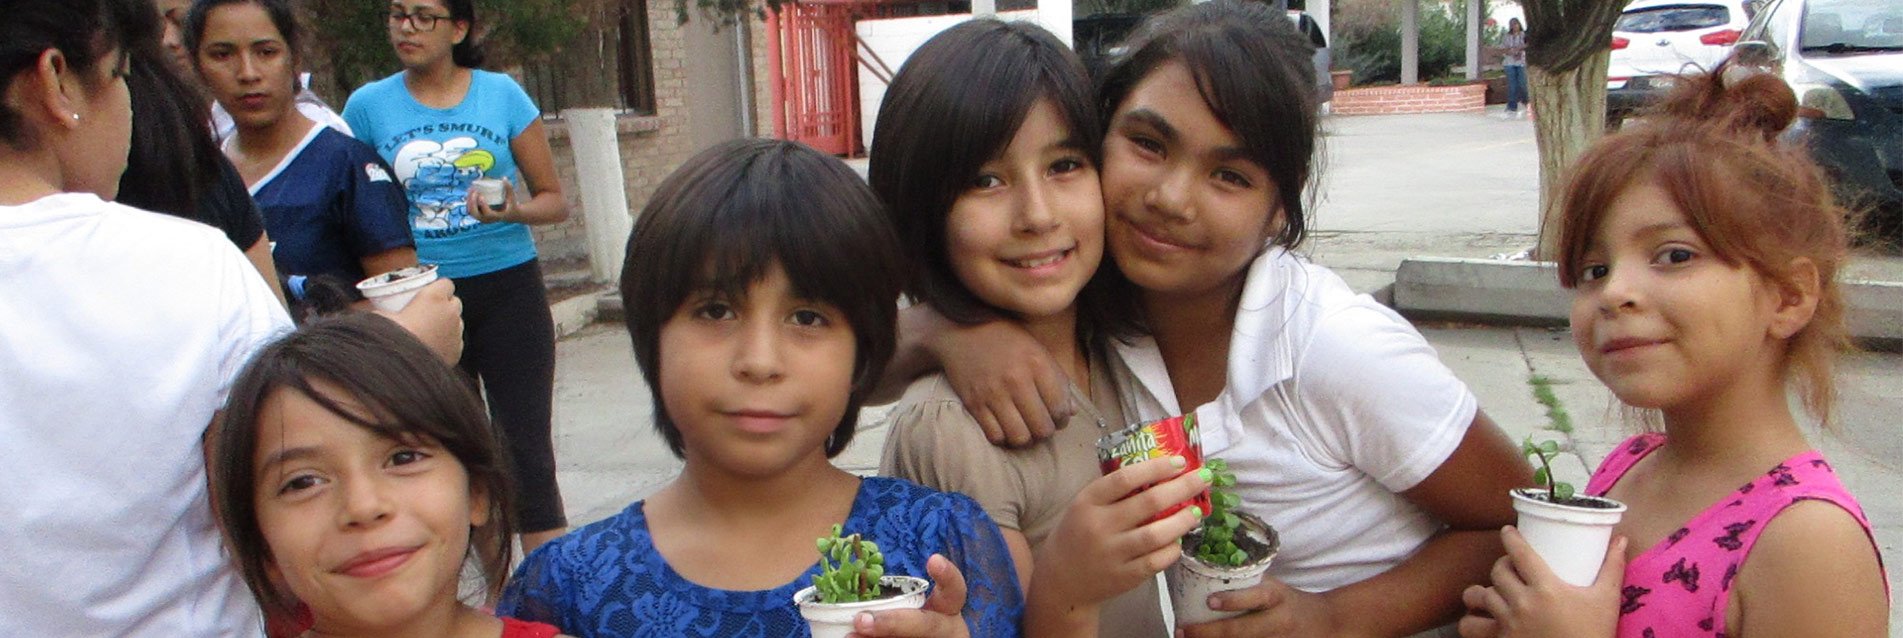 Fondation Mexxa : aider de jeunes Mexicaines défavorisées à construire leur avenir